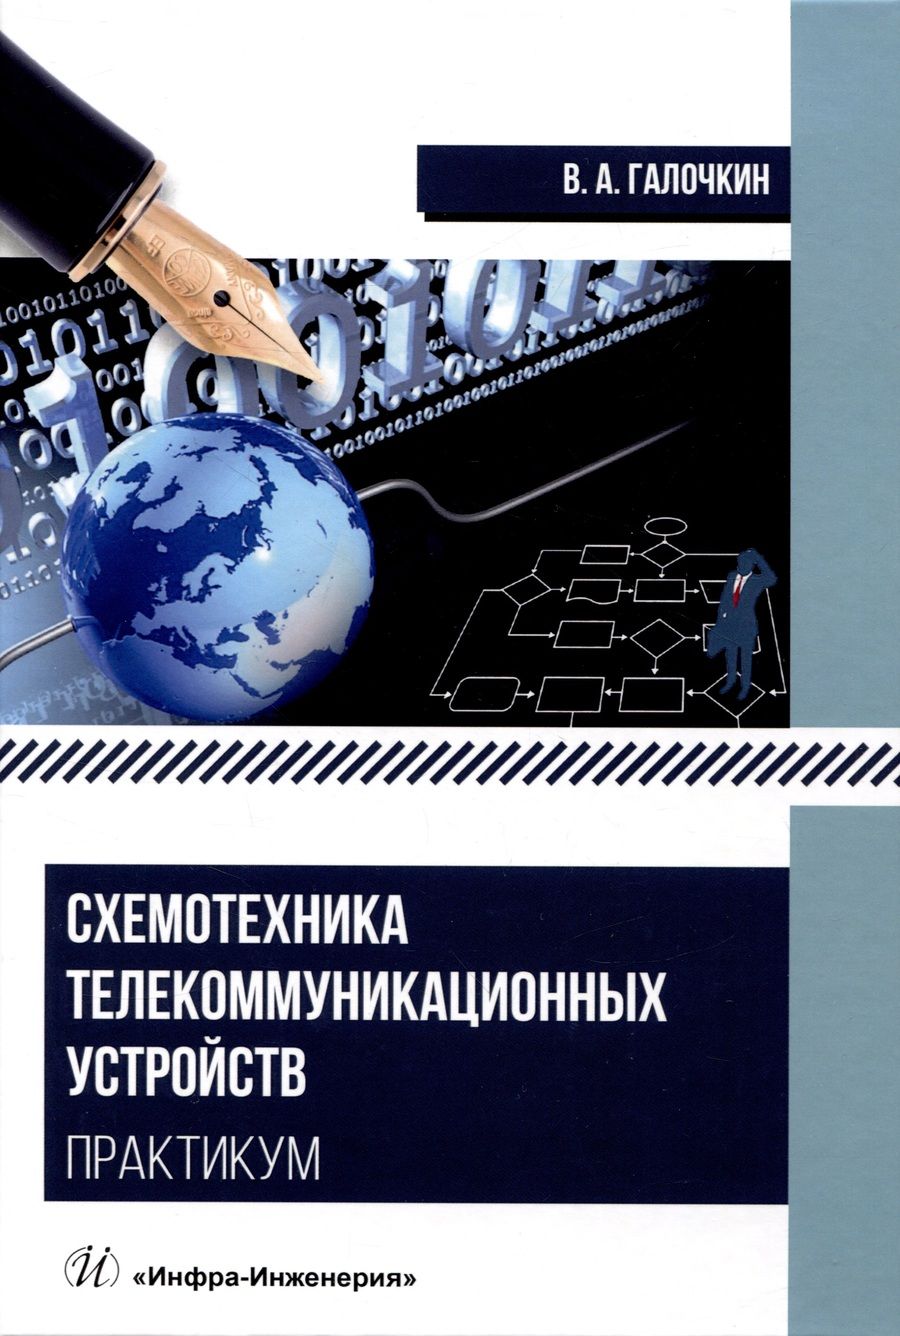 Обложка книги "Галочкин: Схемотехника телекоммуникационных устройств. Практикум"